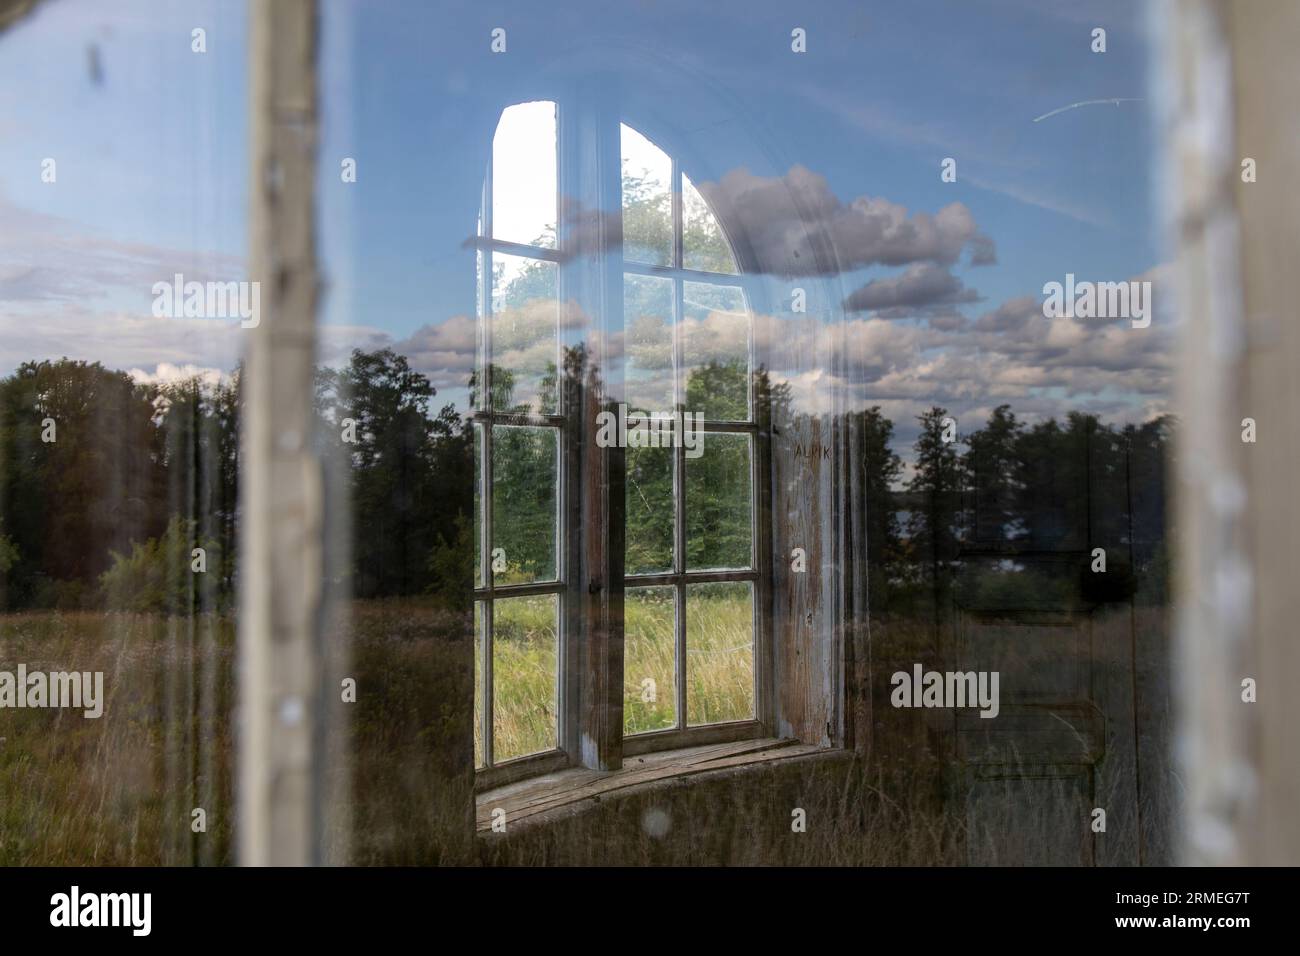 Une vue de l'intérieur d'une fenêtre dans une ferme abandonnée, montrant un paysage rustique et rural Banque D'Images